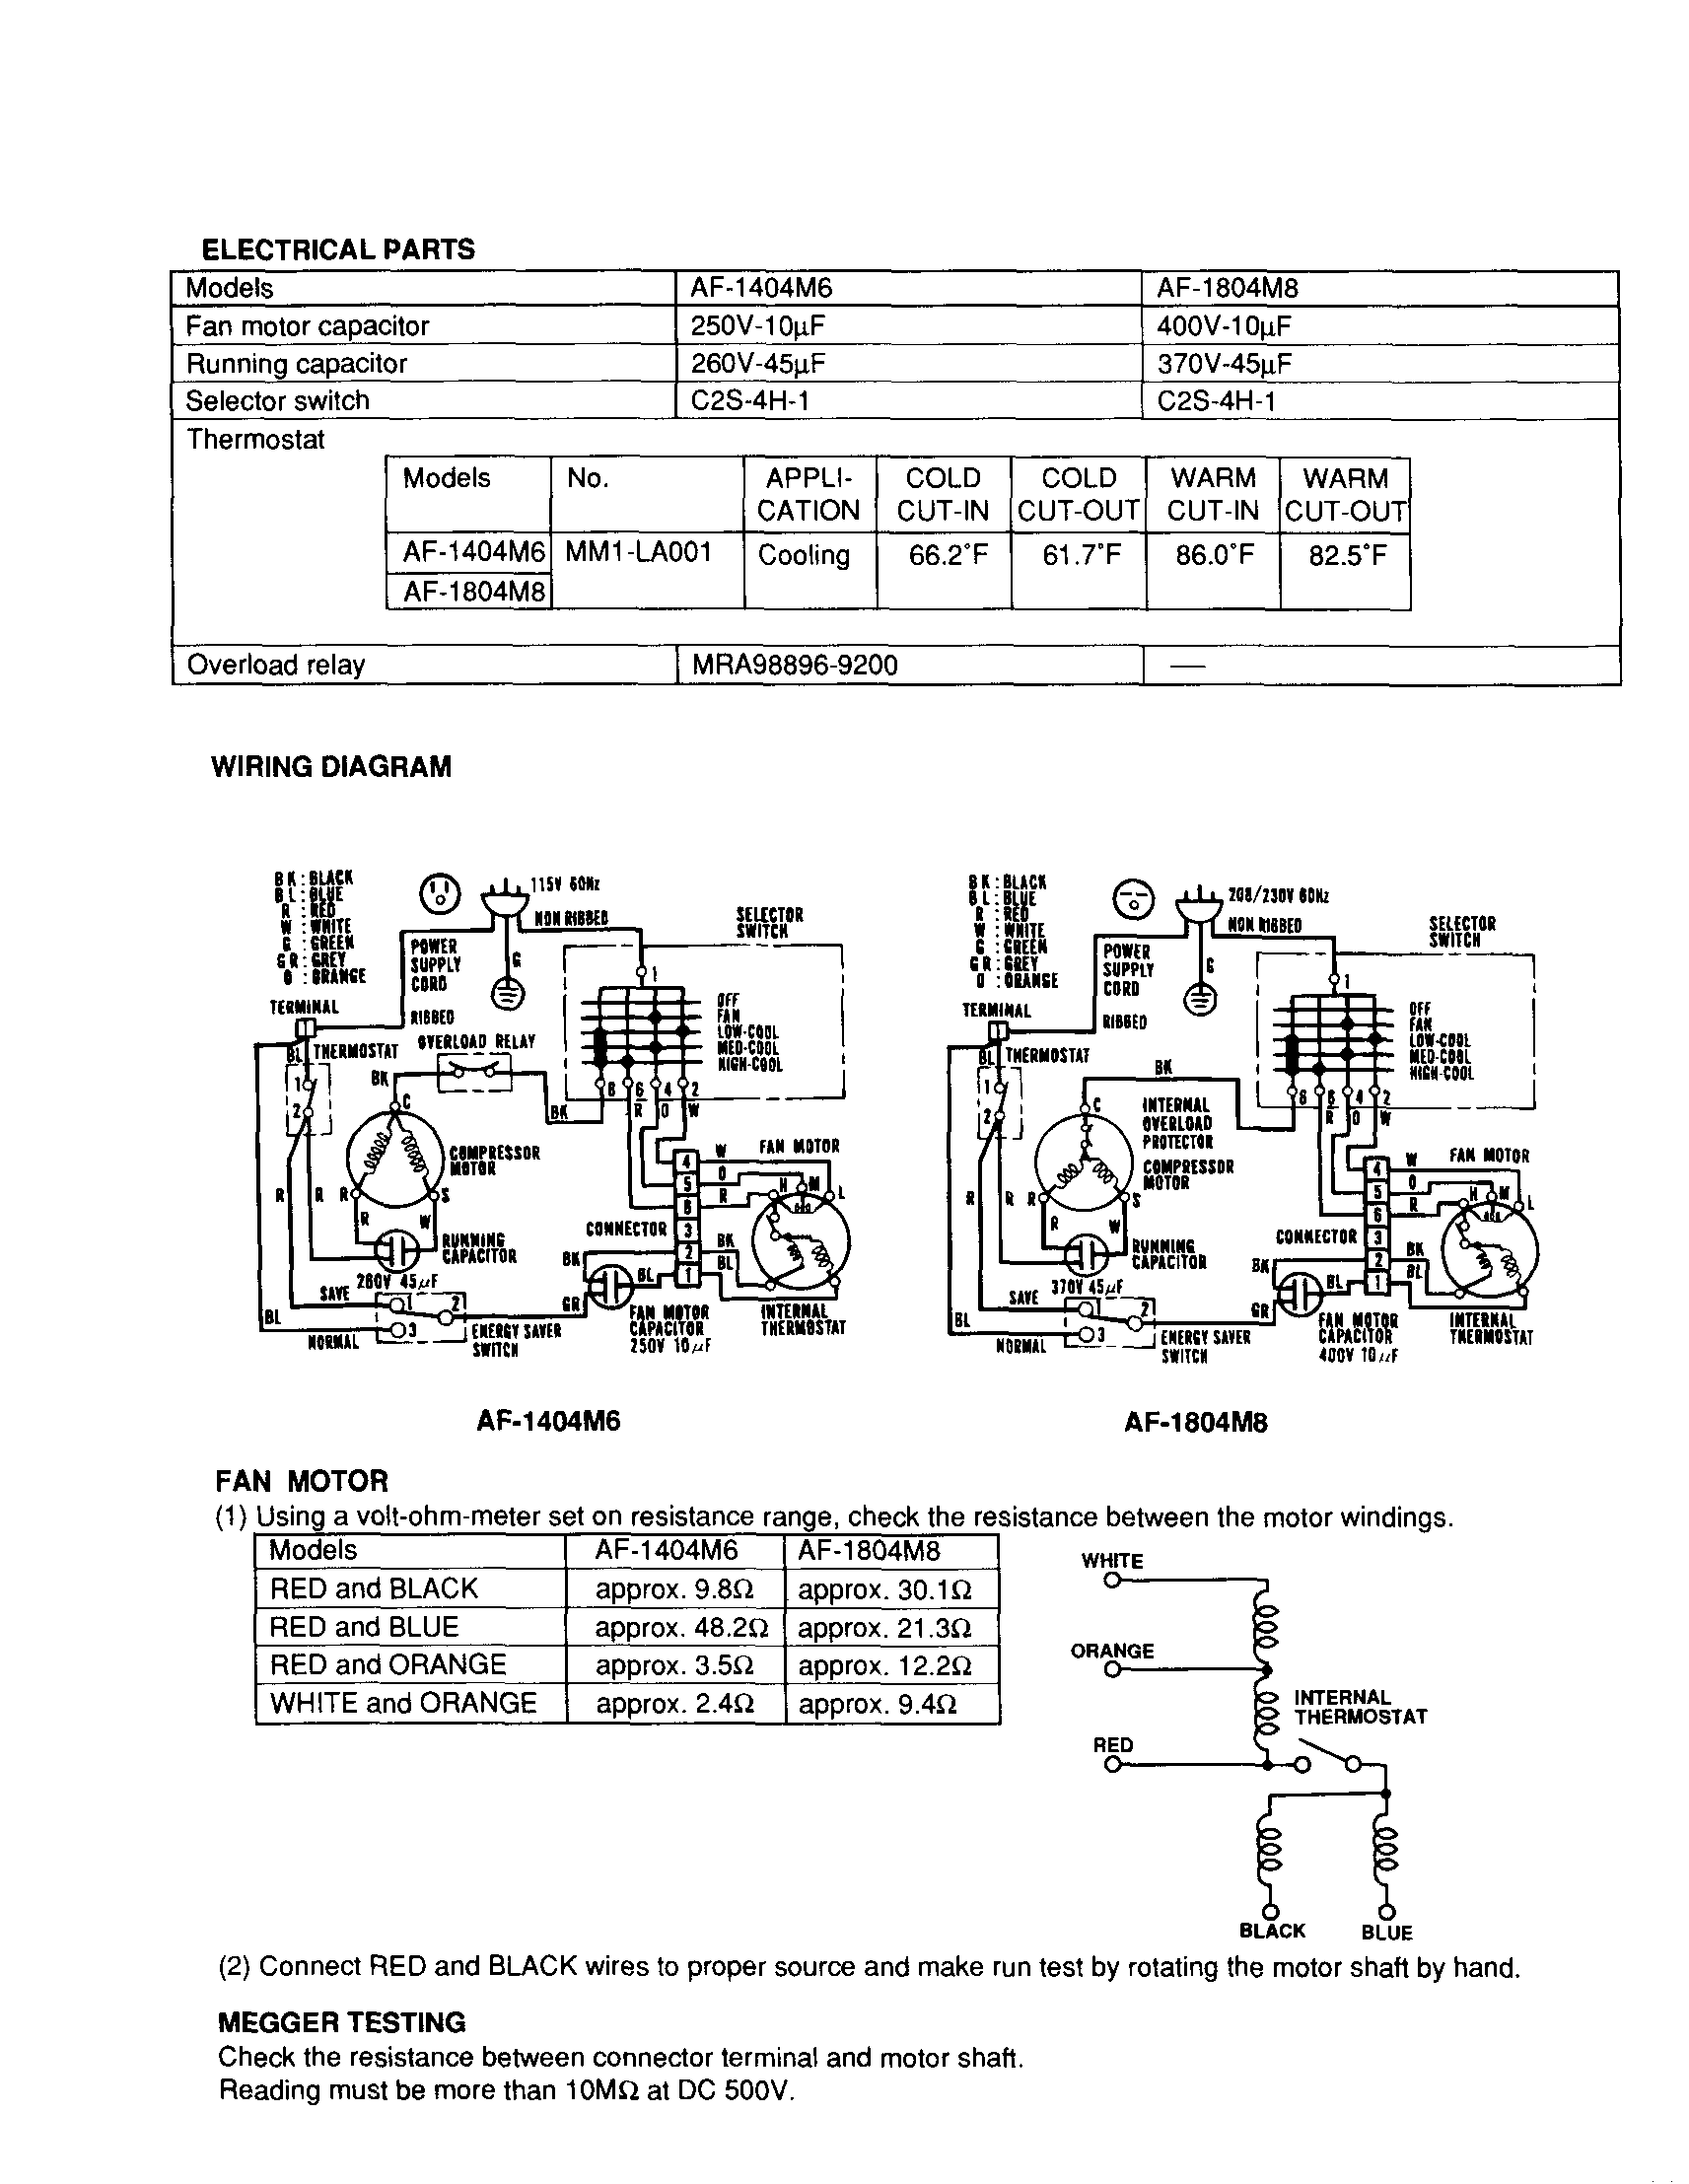 Wiring Diagram Diagram  U0026 Parts List For Model Af1804m6